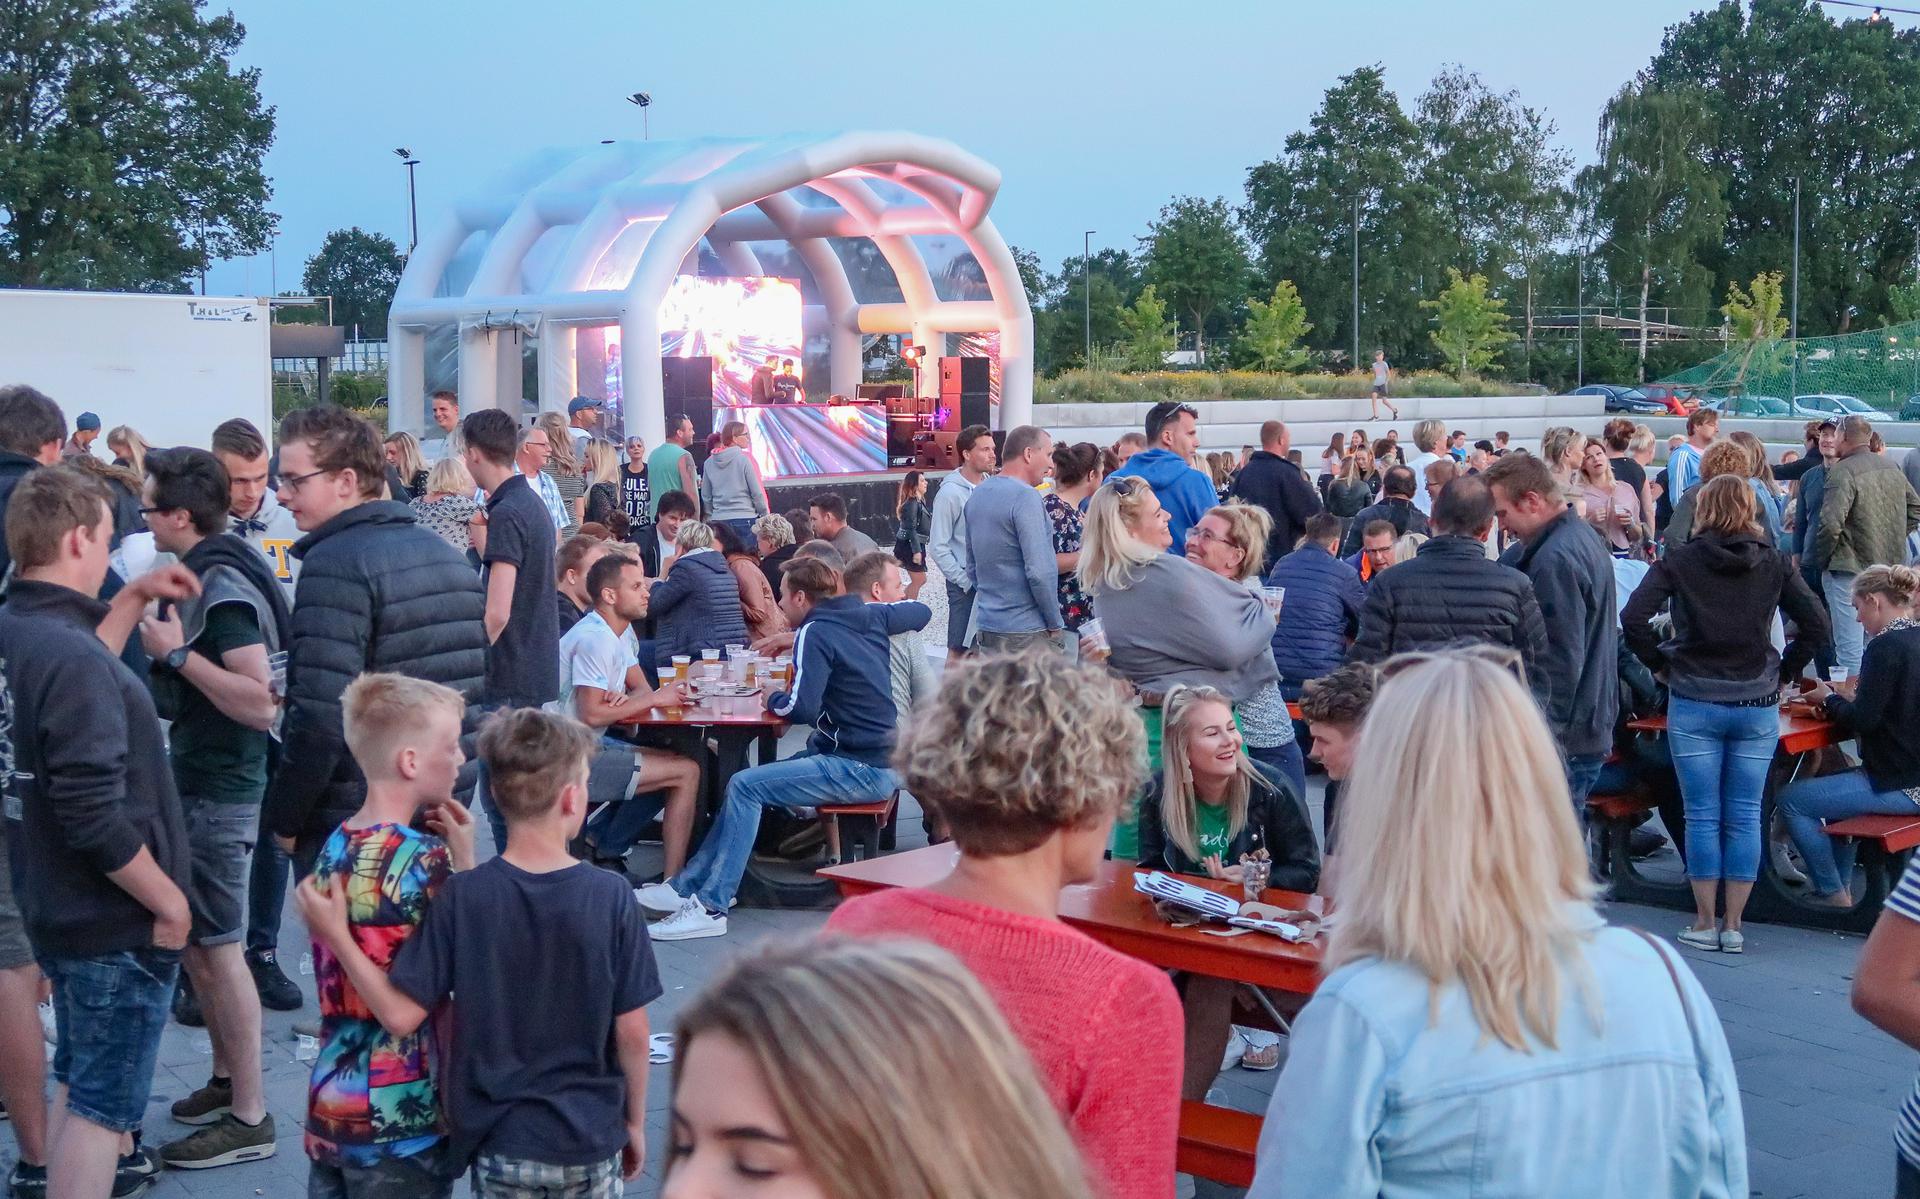 Het Midzomer Festival in Nieuwleusen wordt voor de tweede keer gehouden. Het evenement wordt deze keer behoorlijk uitgebreid.